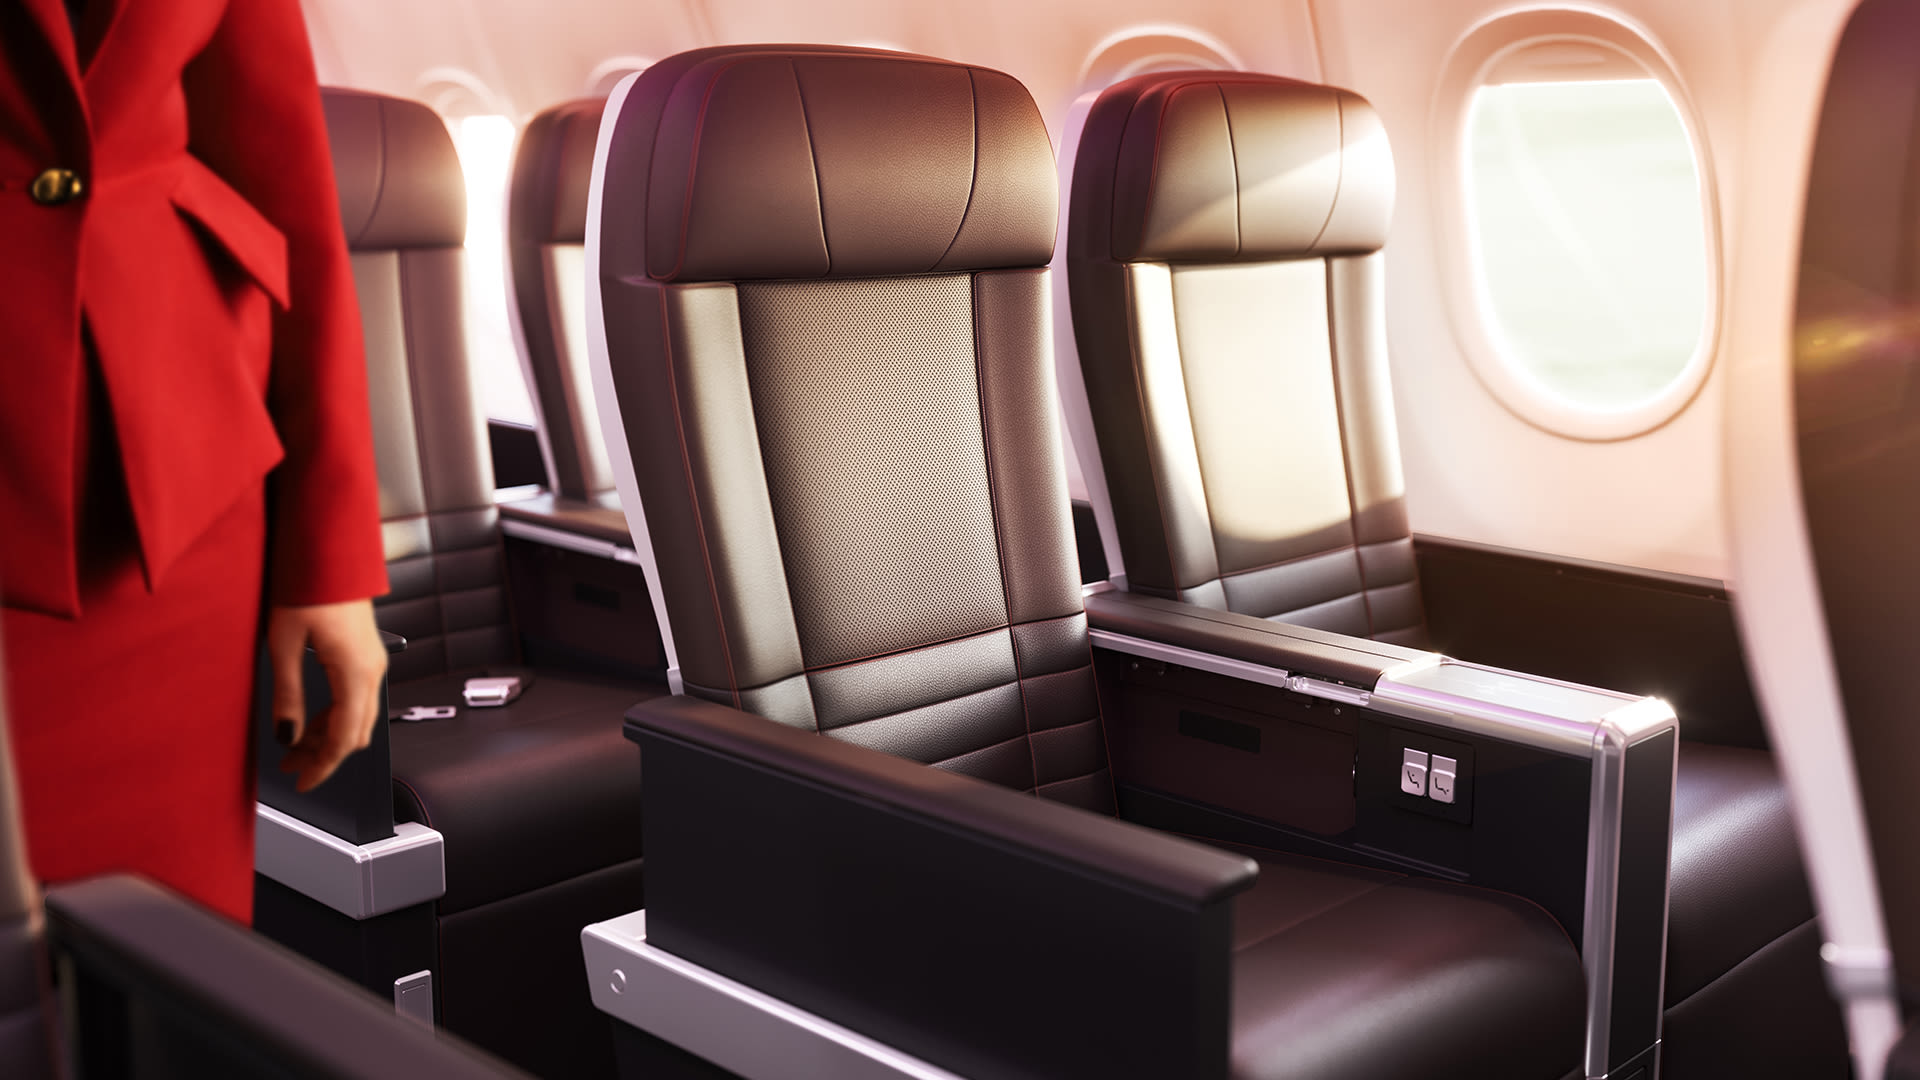 Virgin Atlantic's Premium cabin on Airbus A330neo